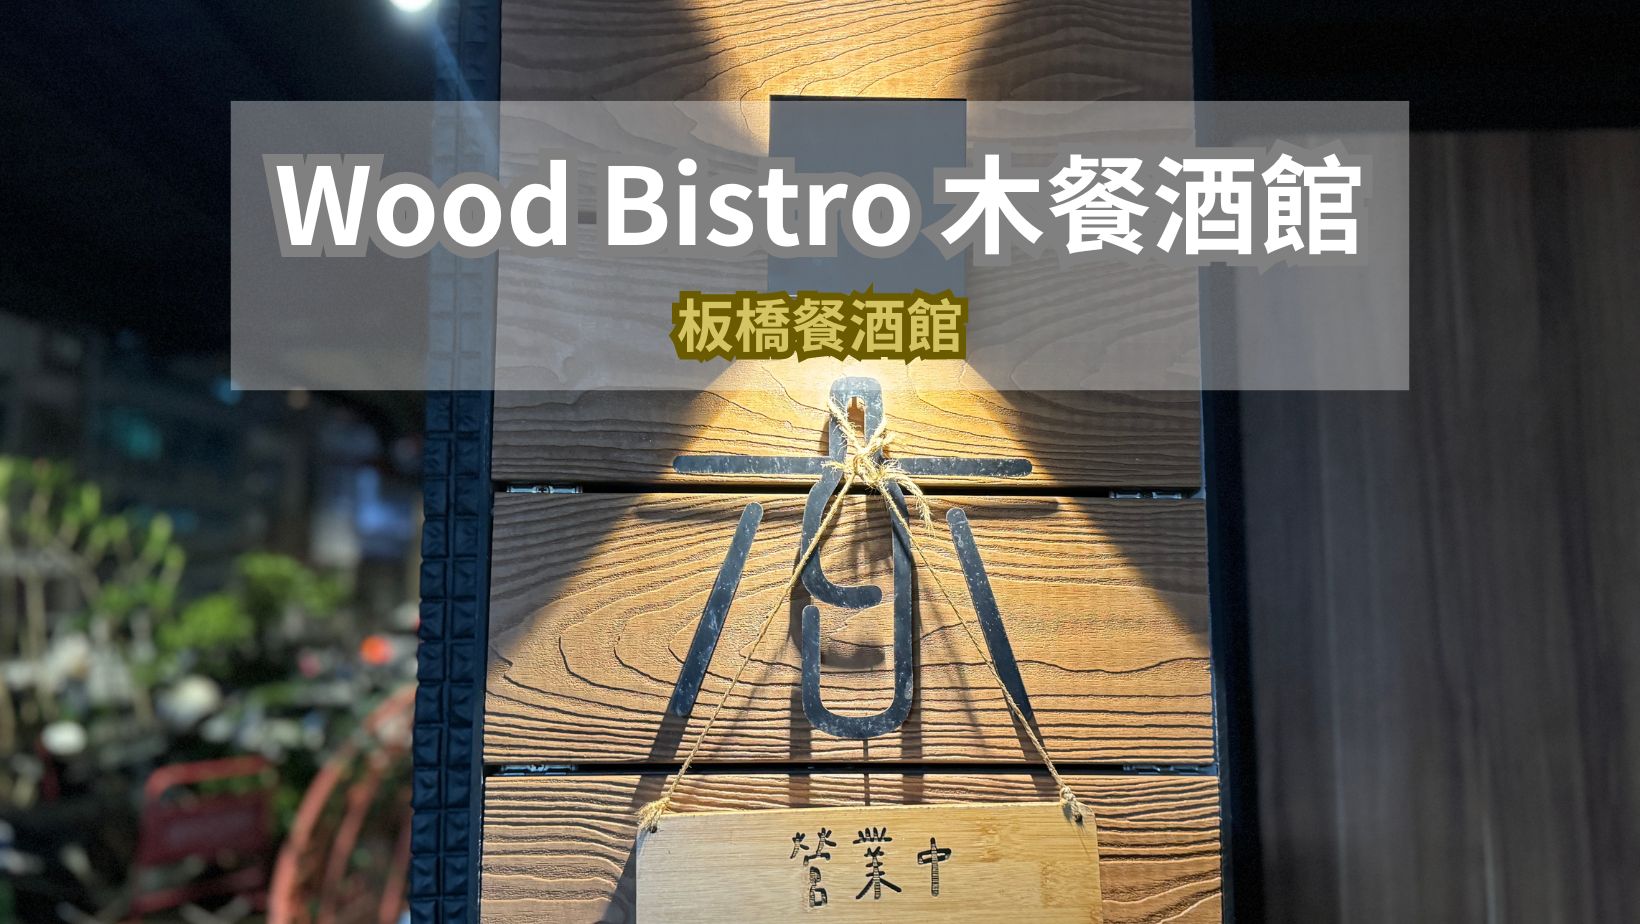 Wood Bistro 木餐酒館